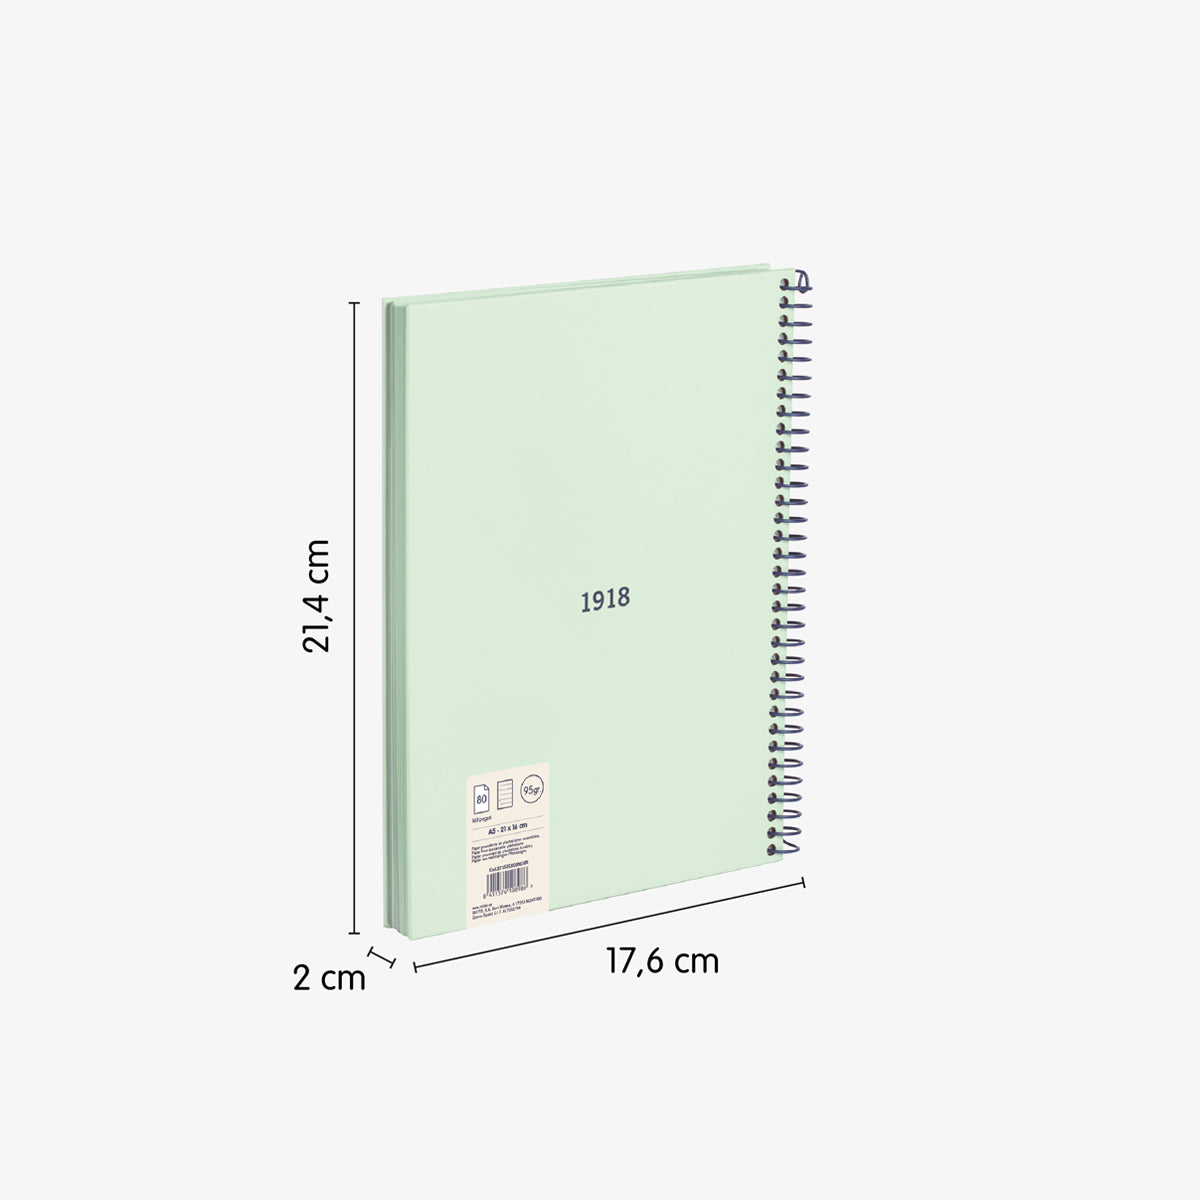 Cuaderno A5 con tapa dura, pauta a líneas 7 mm, 80 hojas de 95 gr/m², 430 since 1918